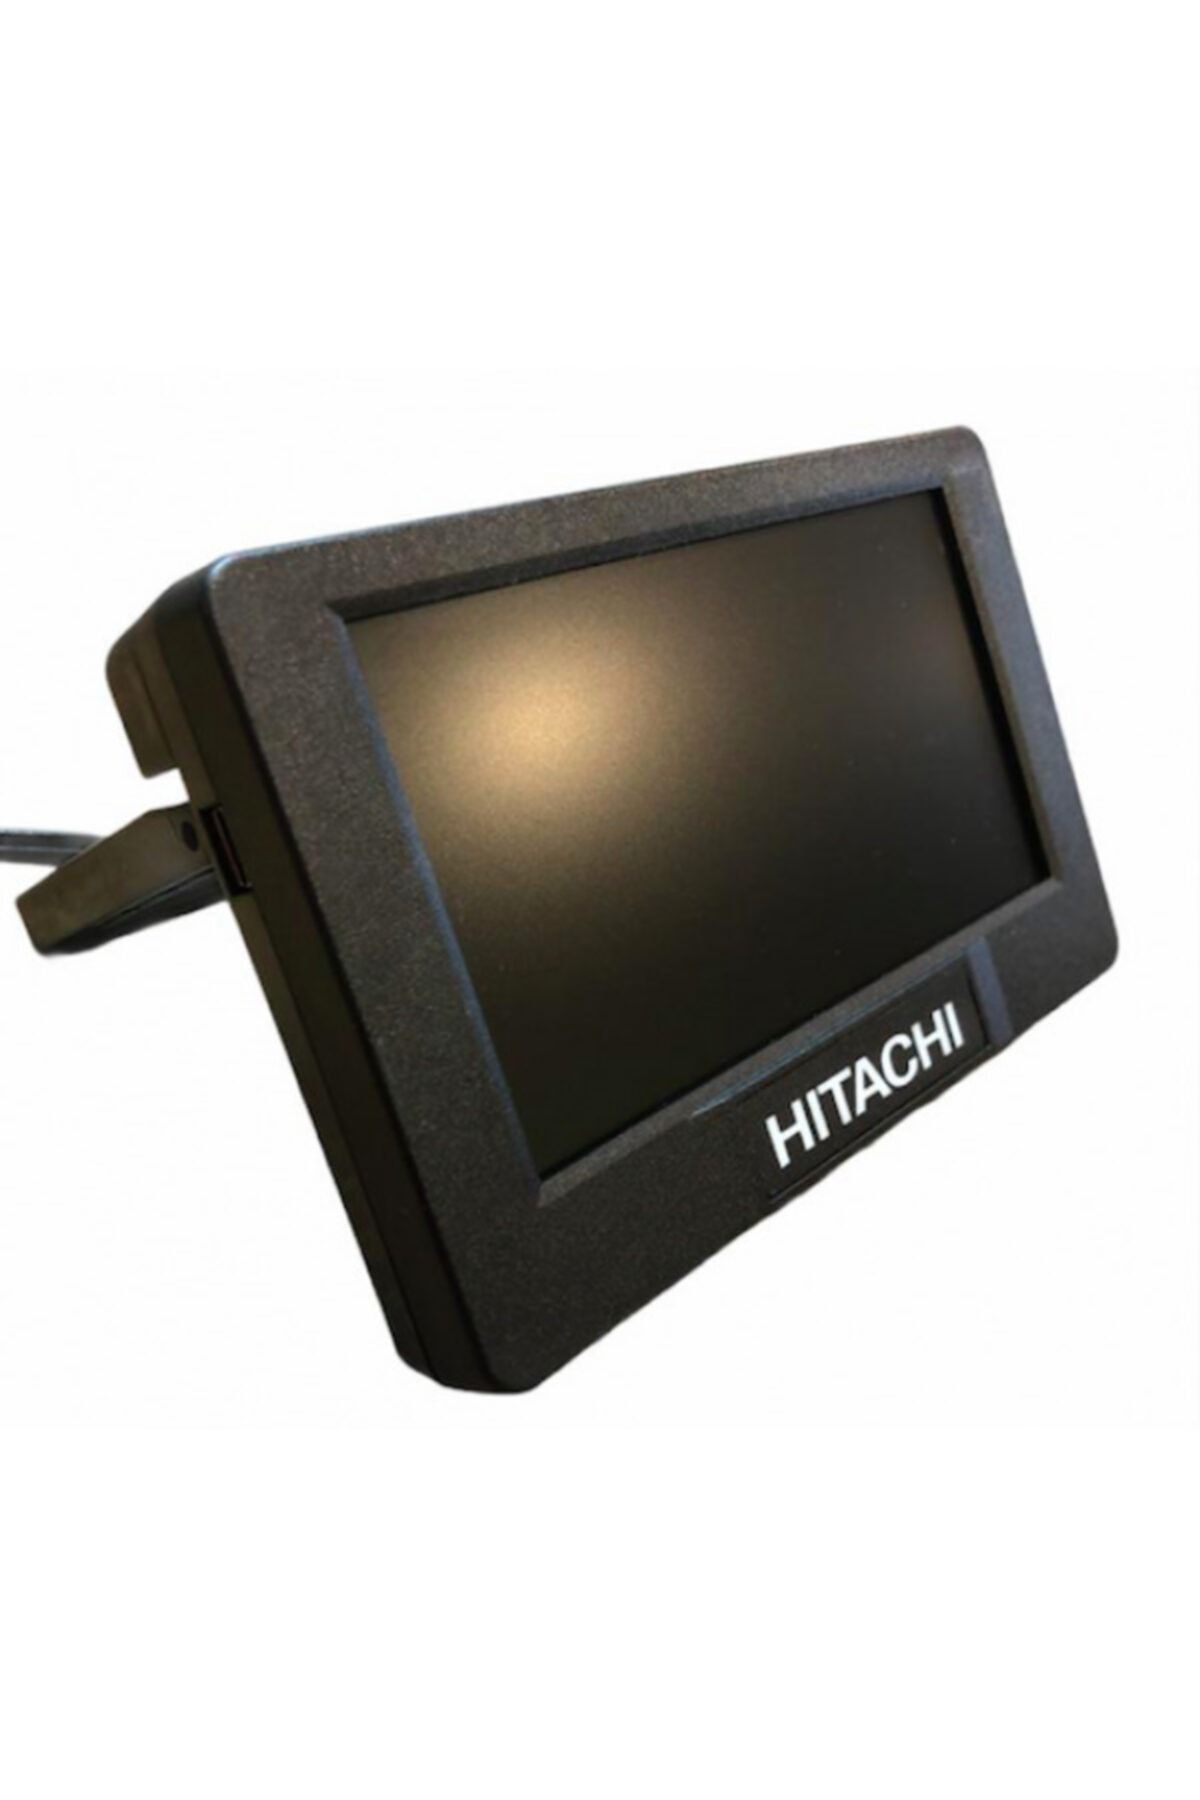 HITACHI Serisi Para Sayma Makinesi Harici Müşteri Ekranı